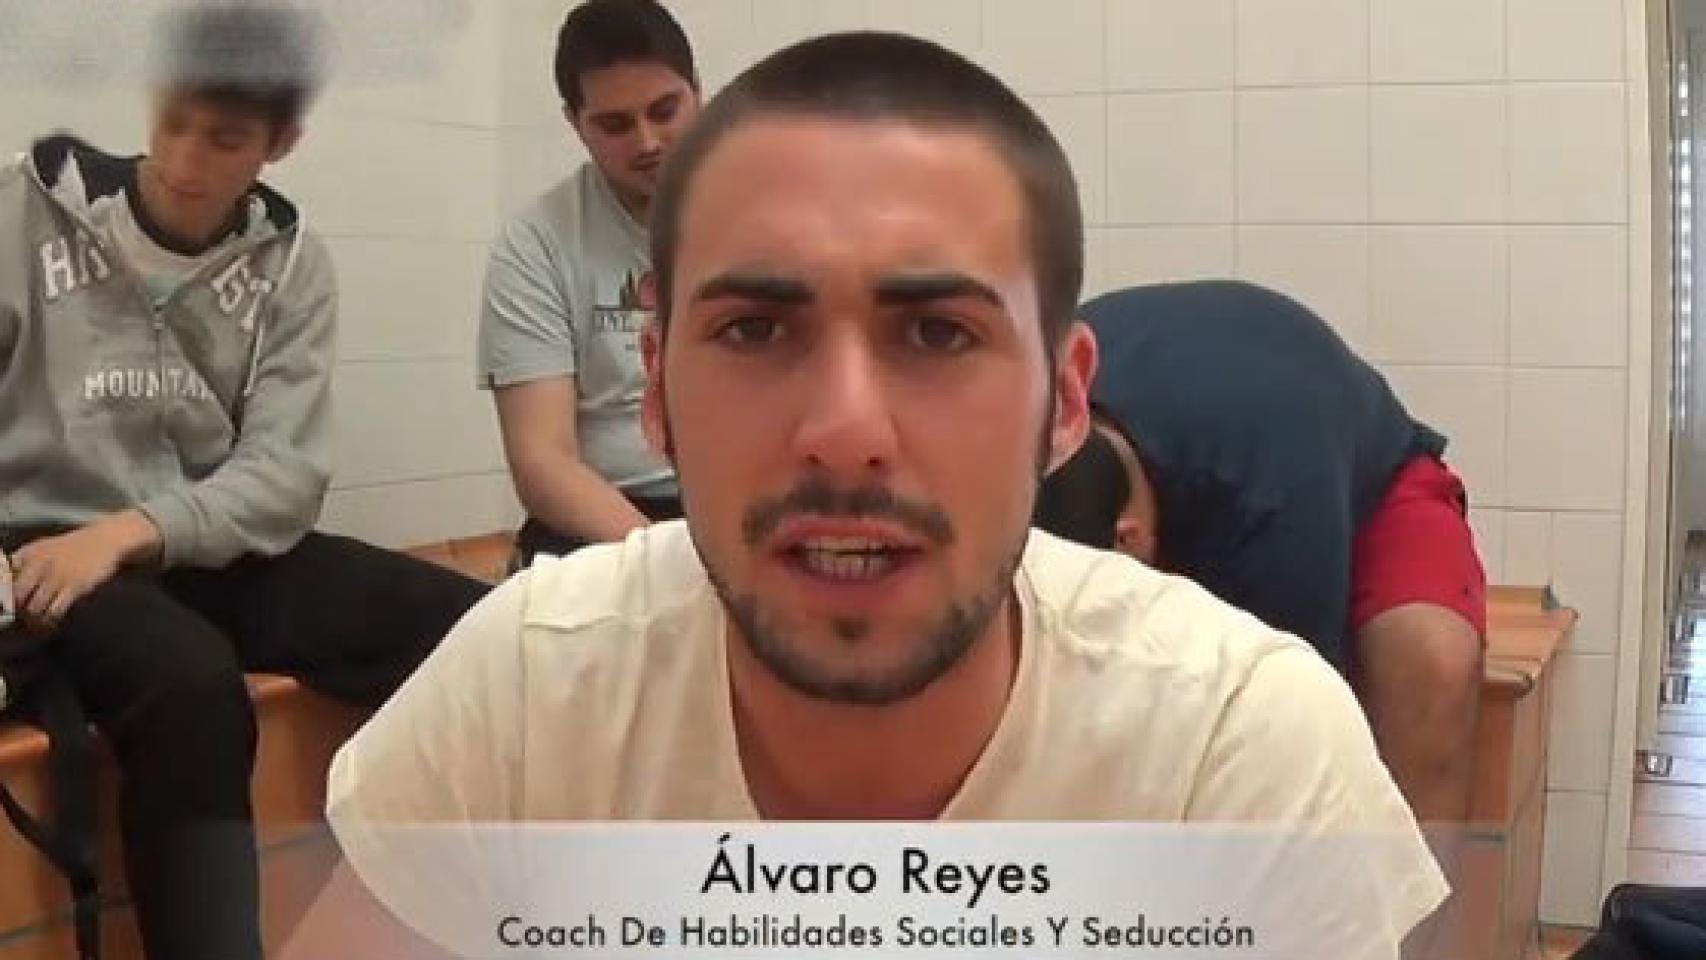 Imagen de Álvaro Reyes en uno de sus vídeos.